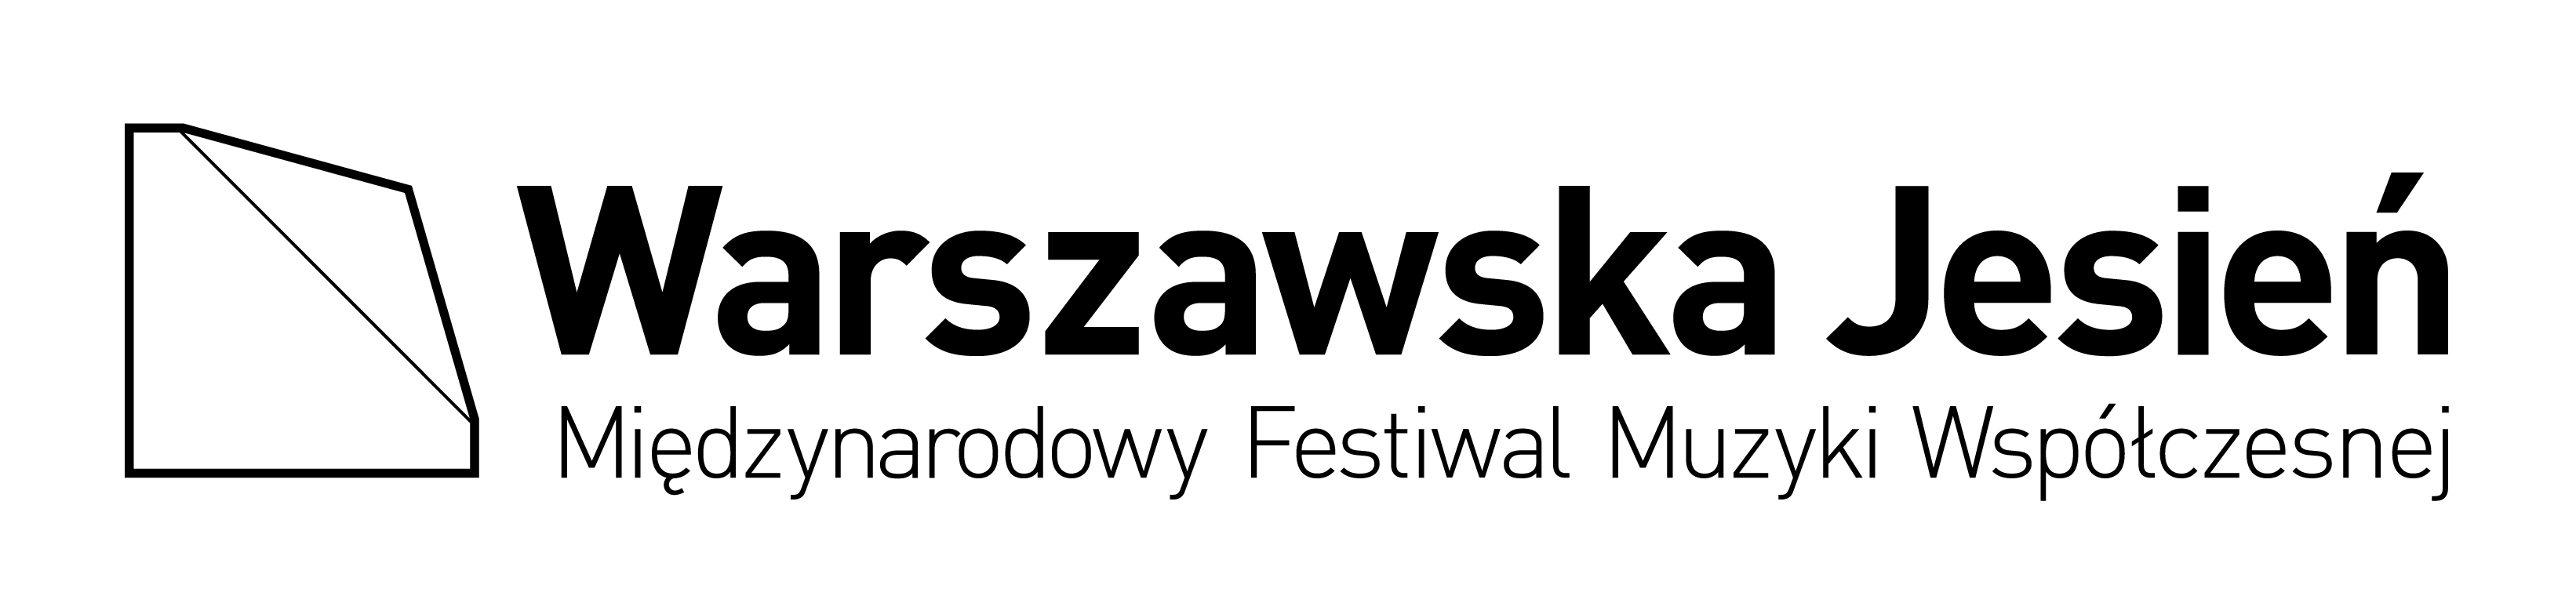 Logotyp Warszawskiej Jesieni